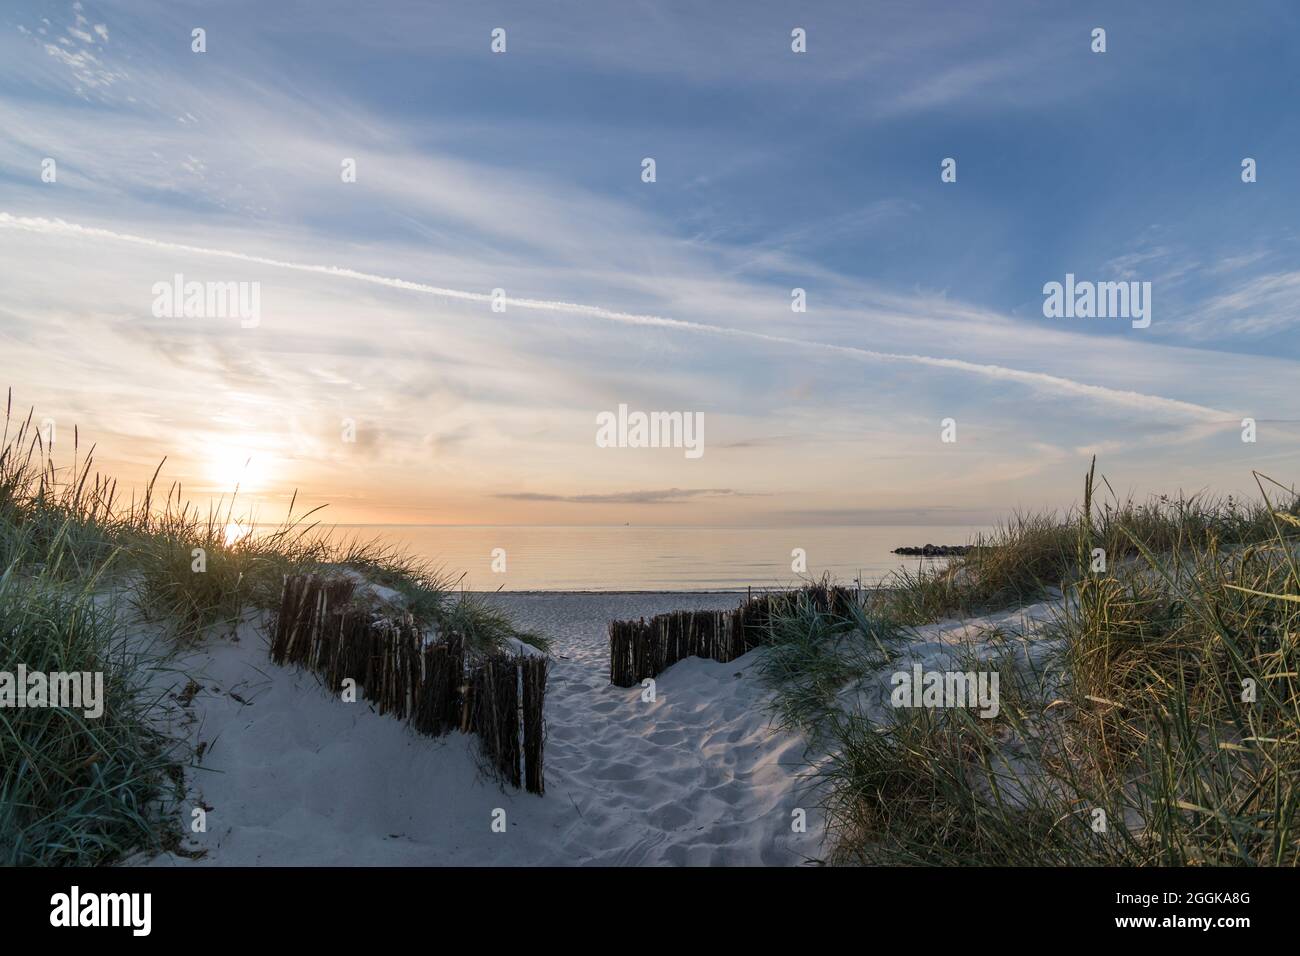 Plage Heidkate à la lumière du soleil du soir sur la mer Baltique, Wisch, Allemagne. Banque D'Images